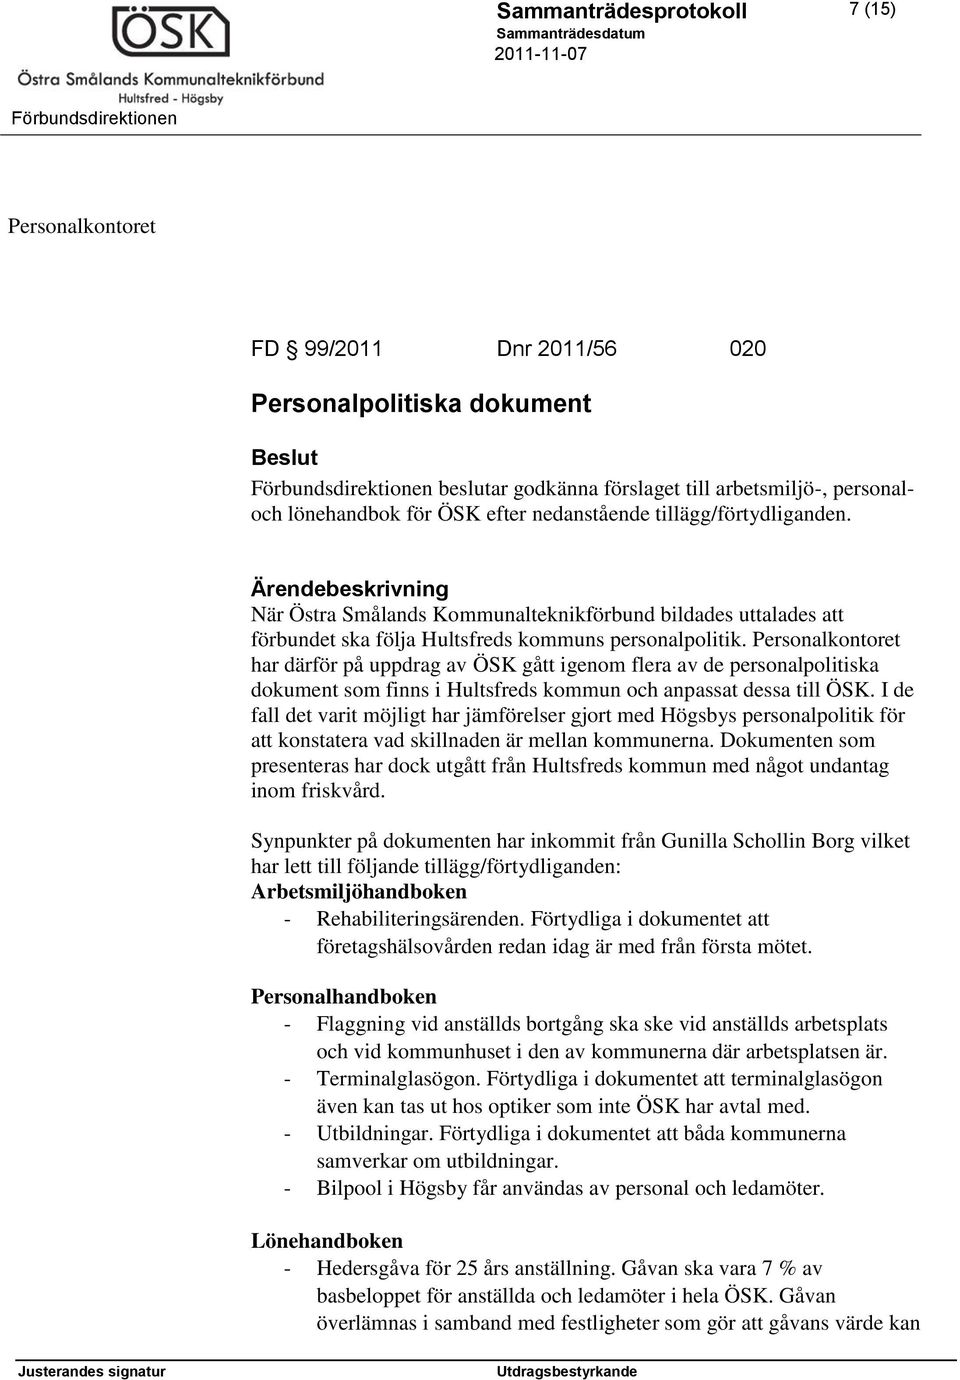 Personalkontoret har därför på uppdrag av ÖSK gått igenom flera av de personalpolitiska dokument som finns i Hultsfreds kommun och anpassat dessa till ÖSK.